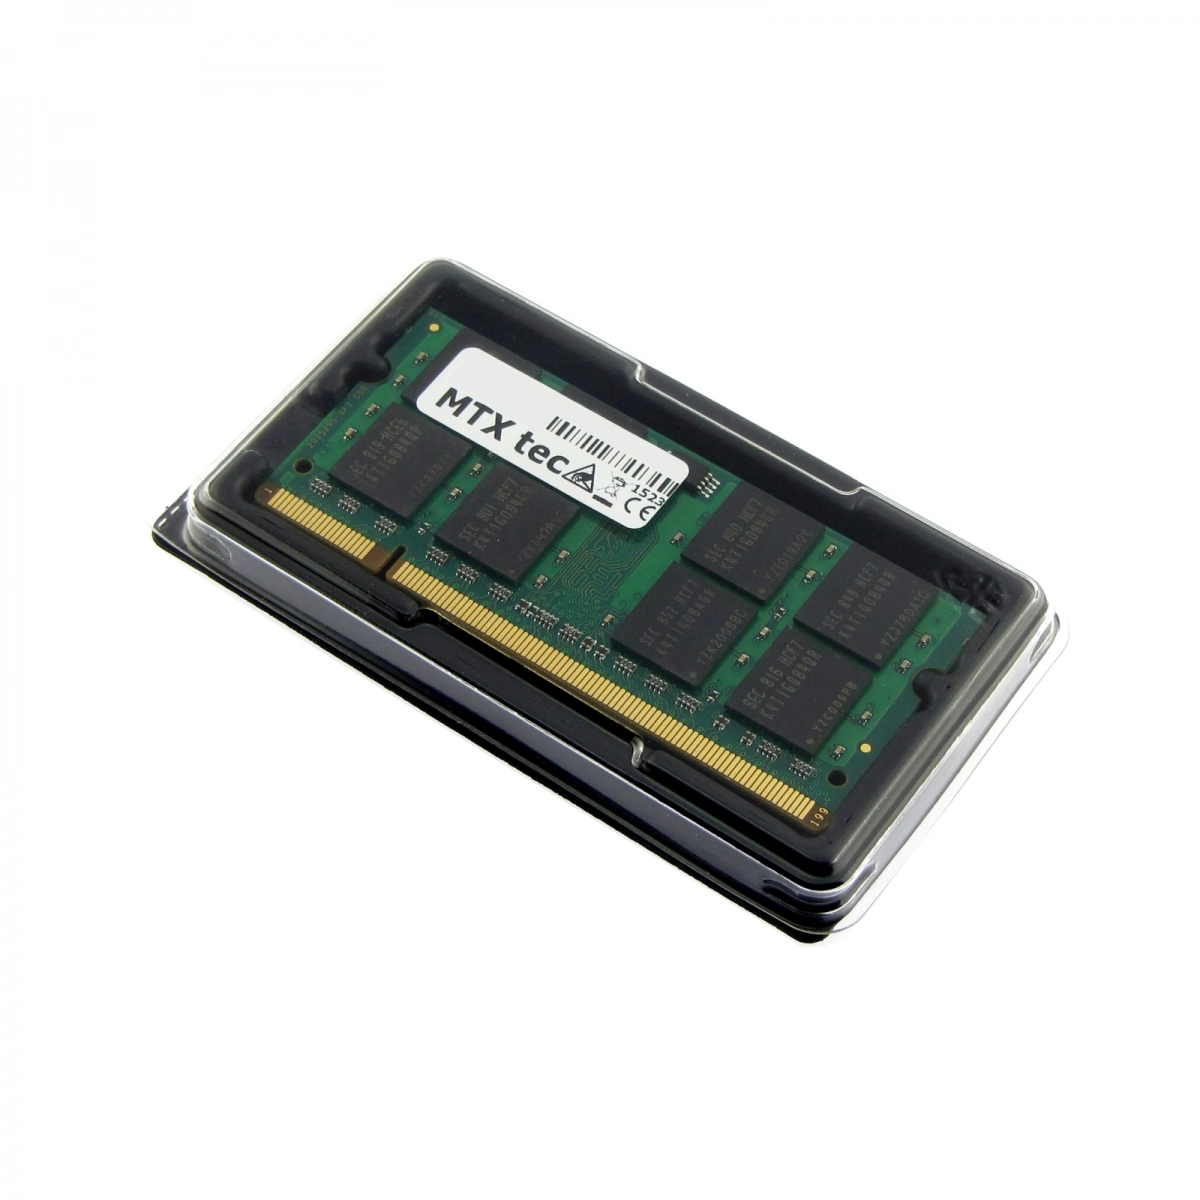 MTXtec Arbeitsspeicher 2 GB RAM für HP Pavilion dv2700